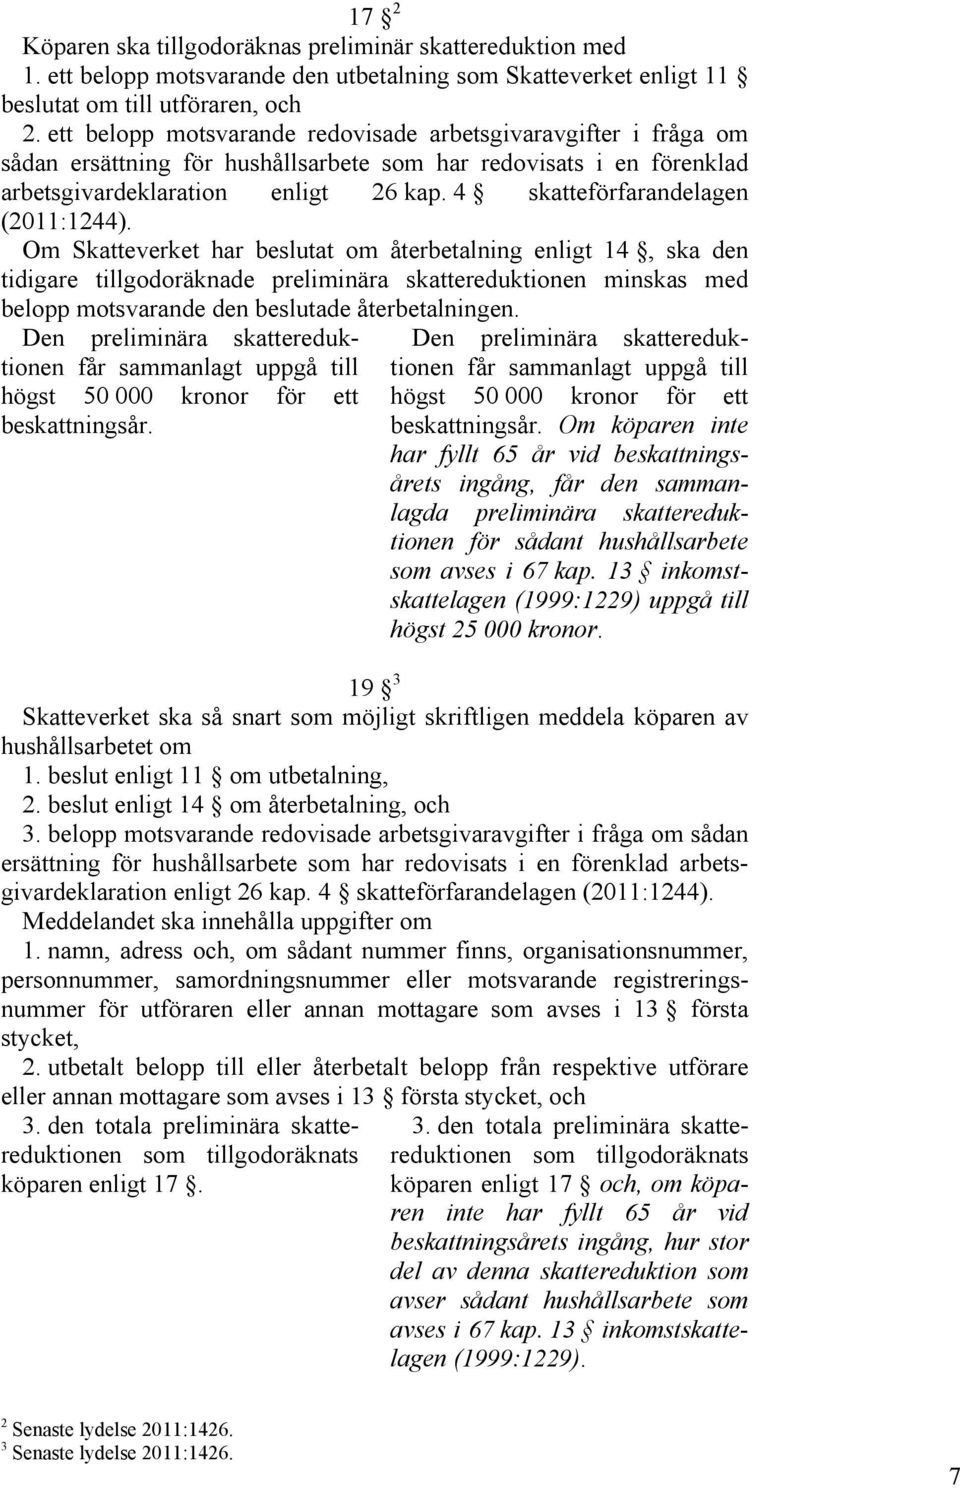 4 skatteförfarandelagen (2011:1244).